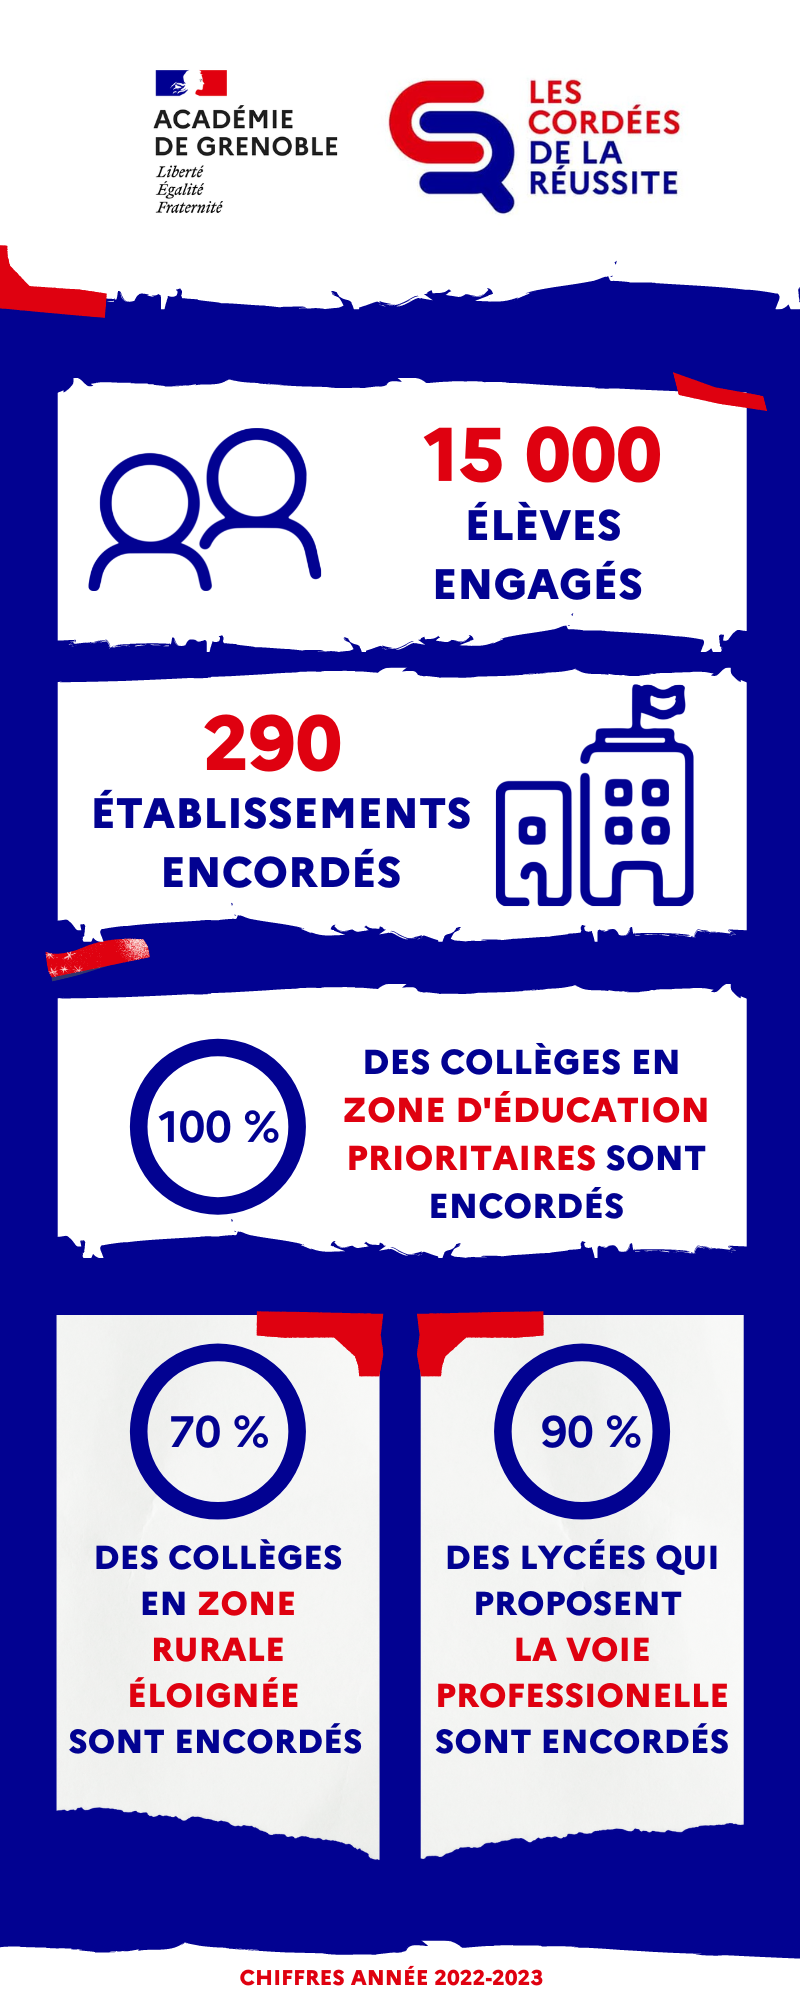  chiffres clés de l'académie de Grenoble : 15 000 élèves engagés dans les cordée  290 établissements encordés  32 têtes de cordées sont réparties sur tout le territoire  100% des collèges en éducation prioritaire sont encordés.  En zone rurale éloignée, nous sommes à 70% de collège encordés.   80 % des lycées qui proposent la voie professionnelle sont encordés. 